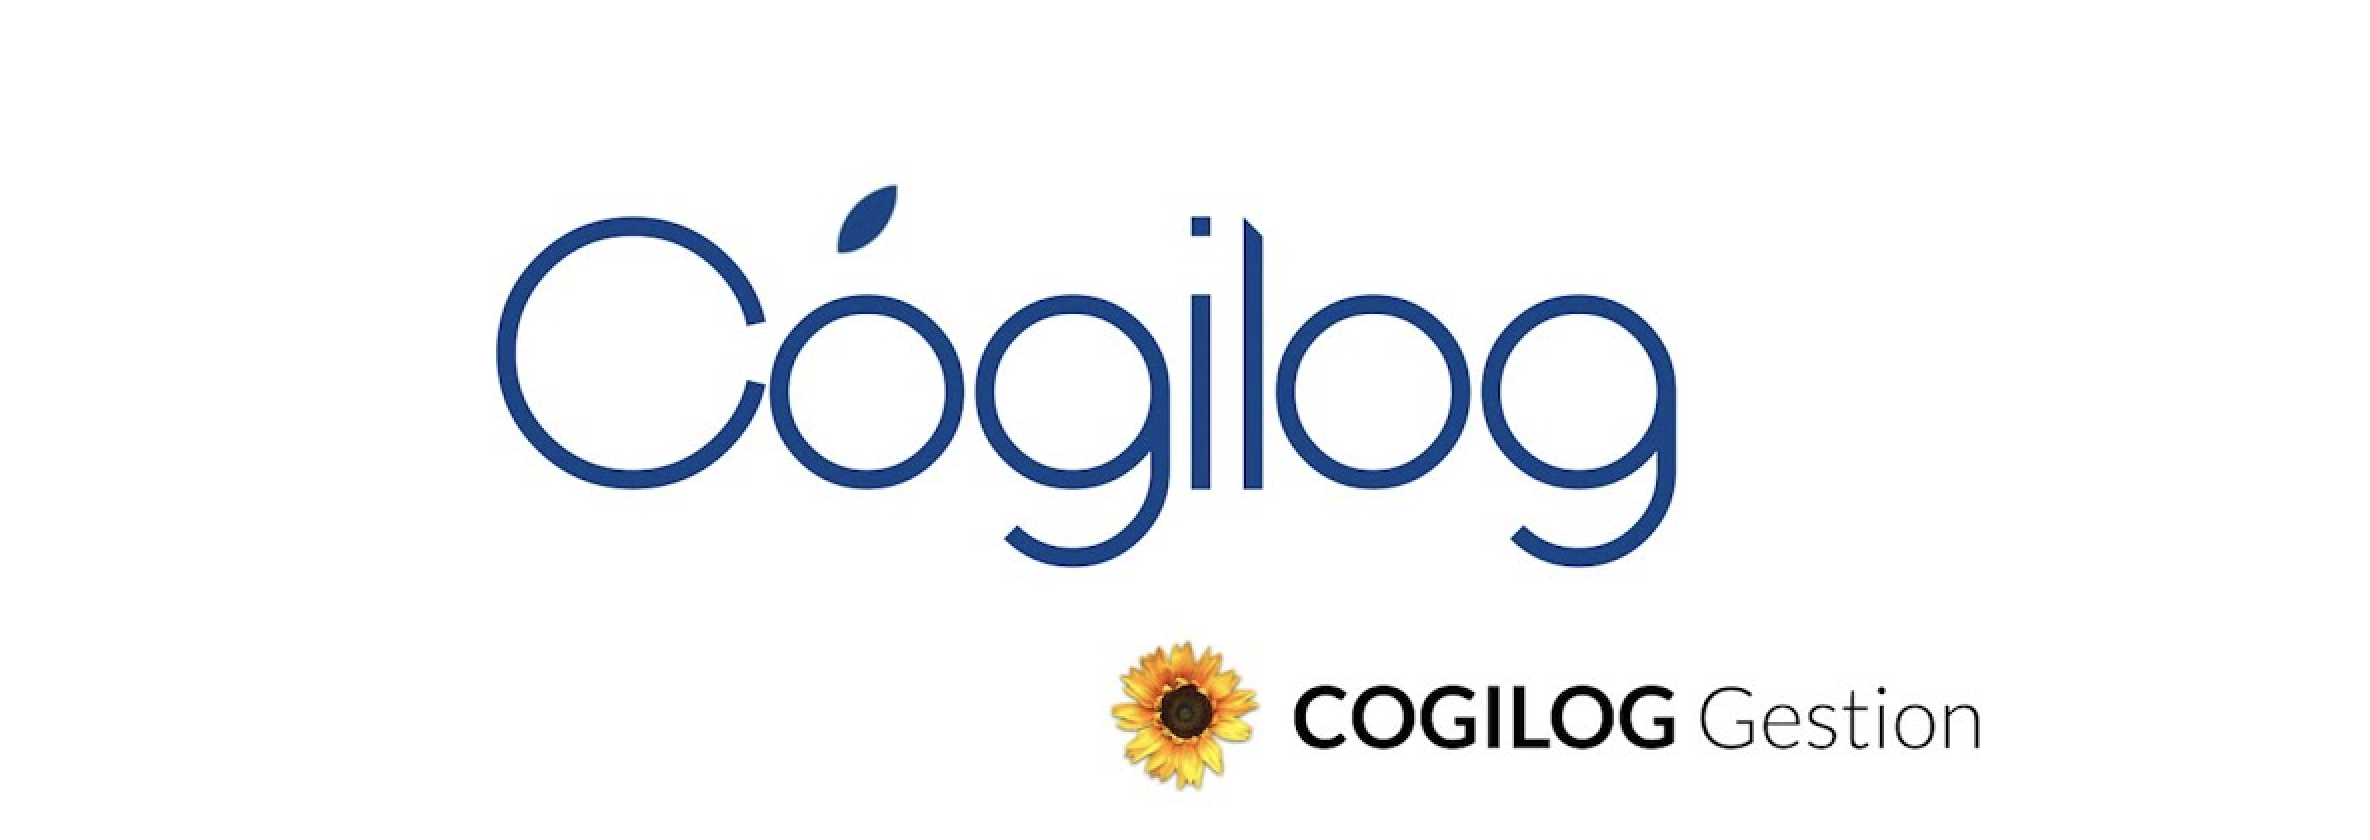 Avis Cogilog Gestion : Le logiciel de gestion d'entreprise de référence pour Mac - Appvizer